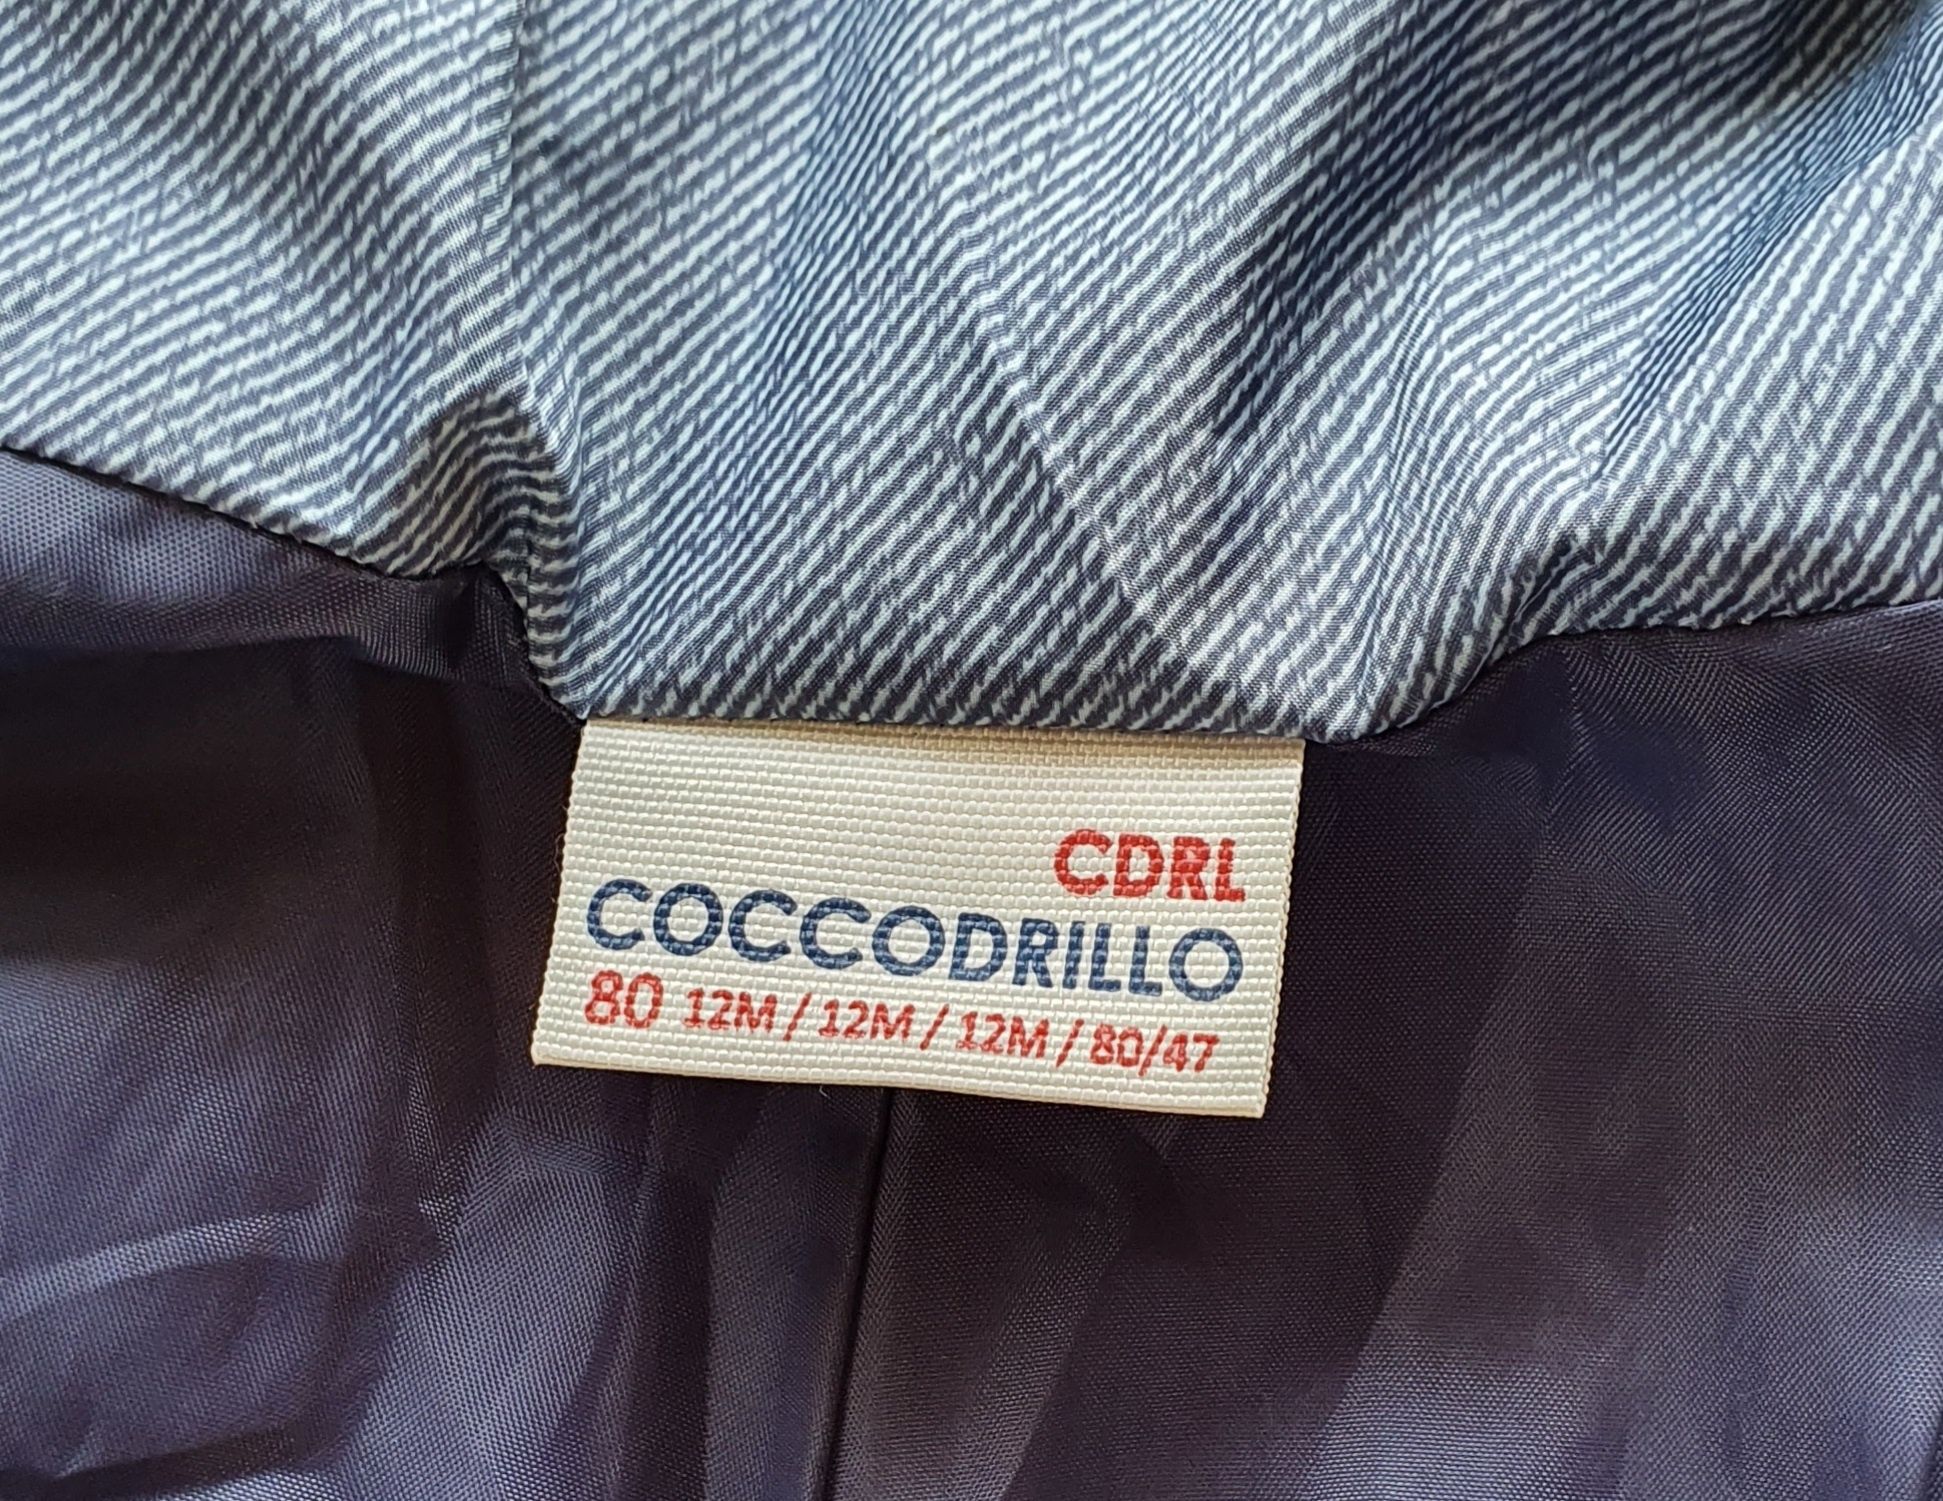 Spodnie ocieplane na szelkach Coccodrillo, rozm. 80 cm (12 M)